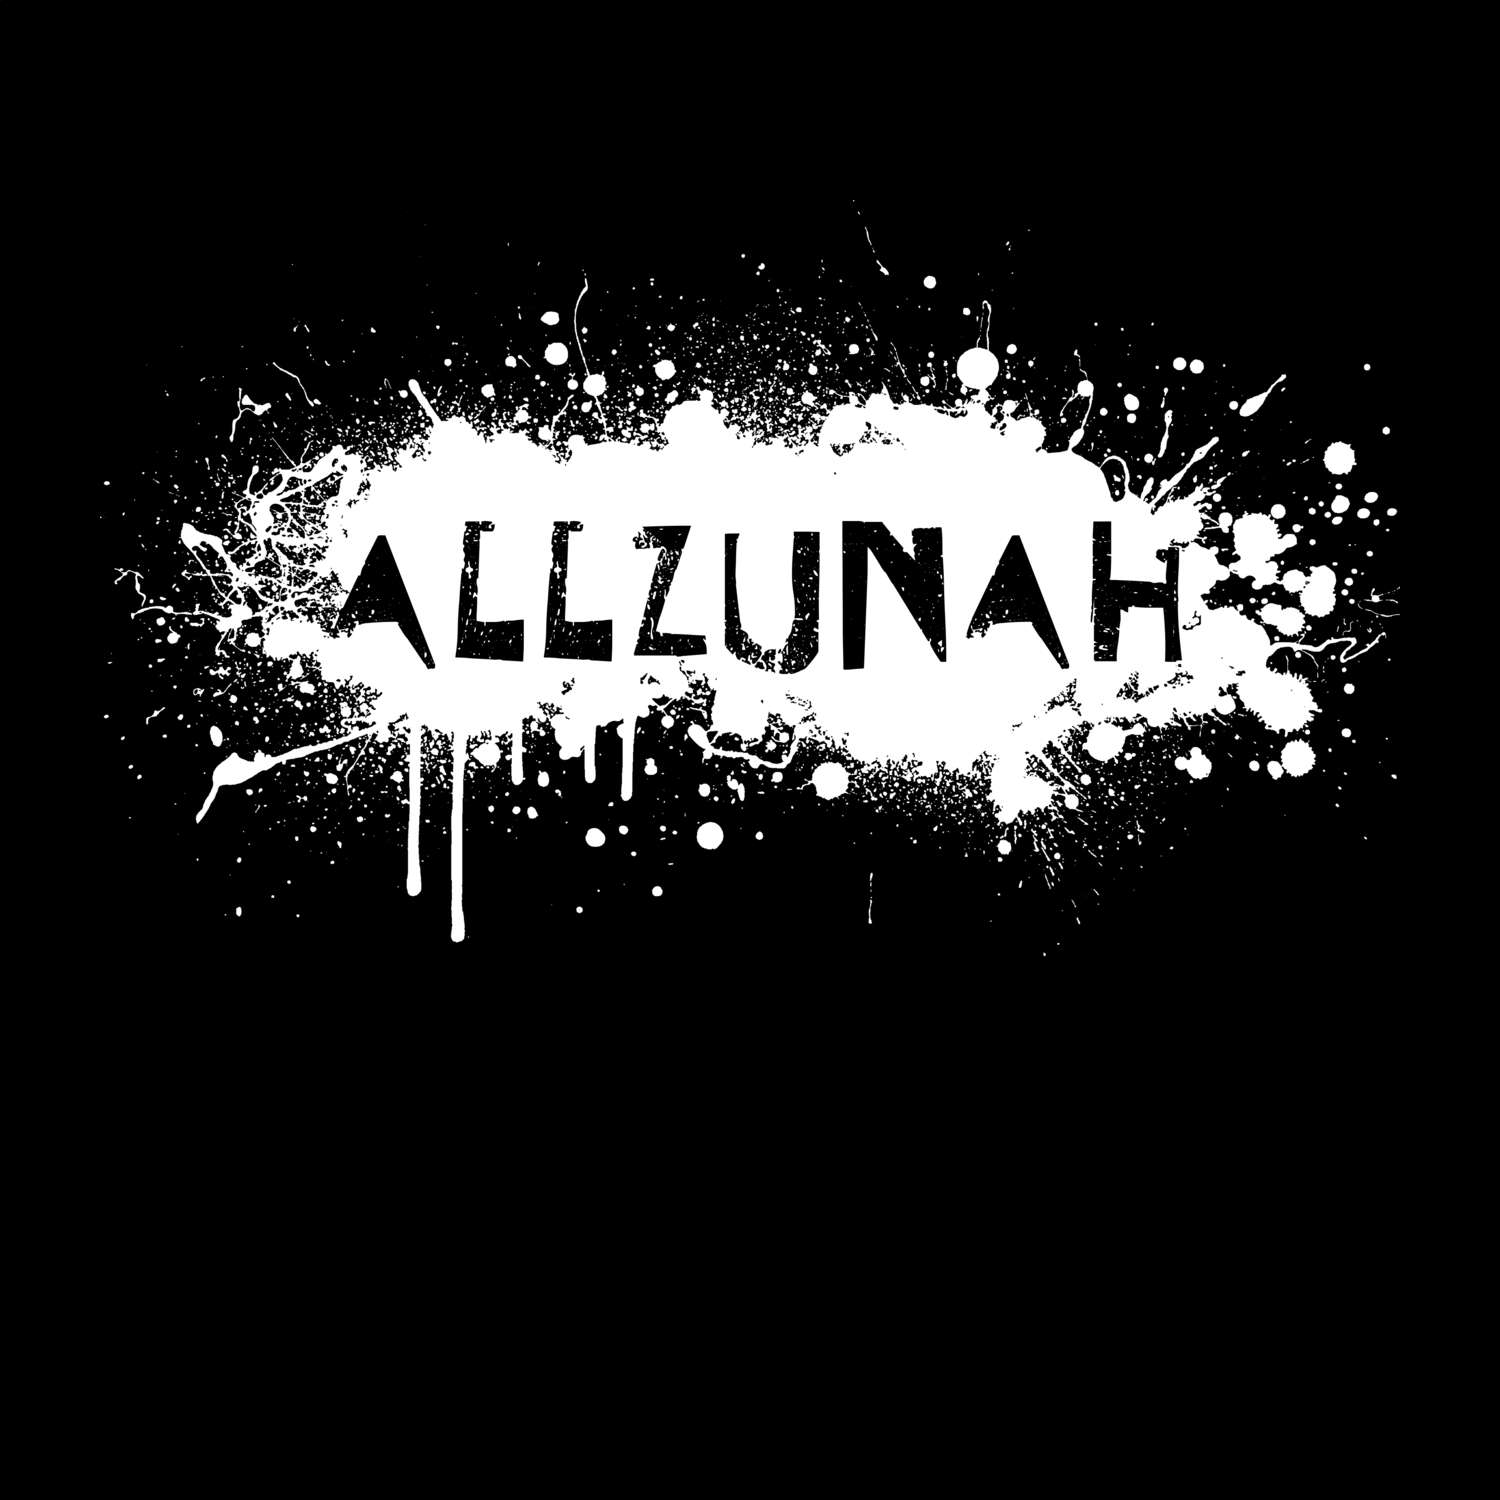 Allzunah T-Shirt »Paint Splash Punk«